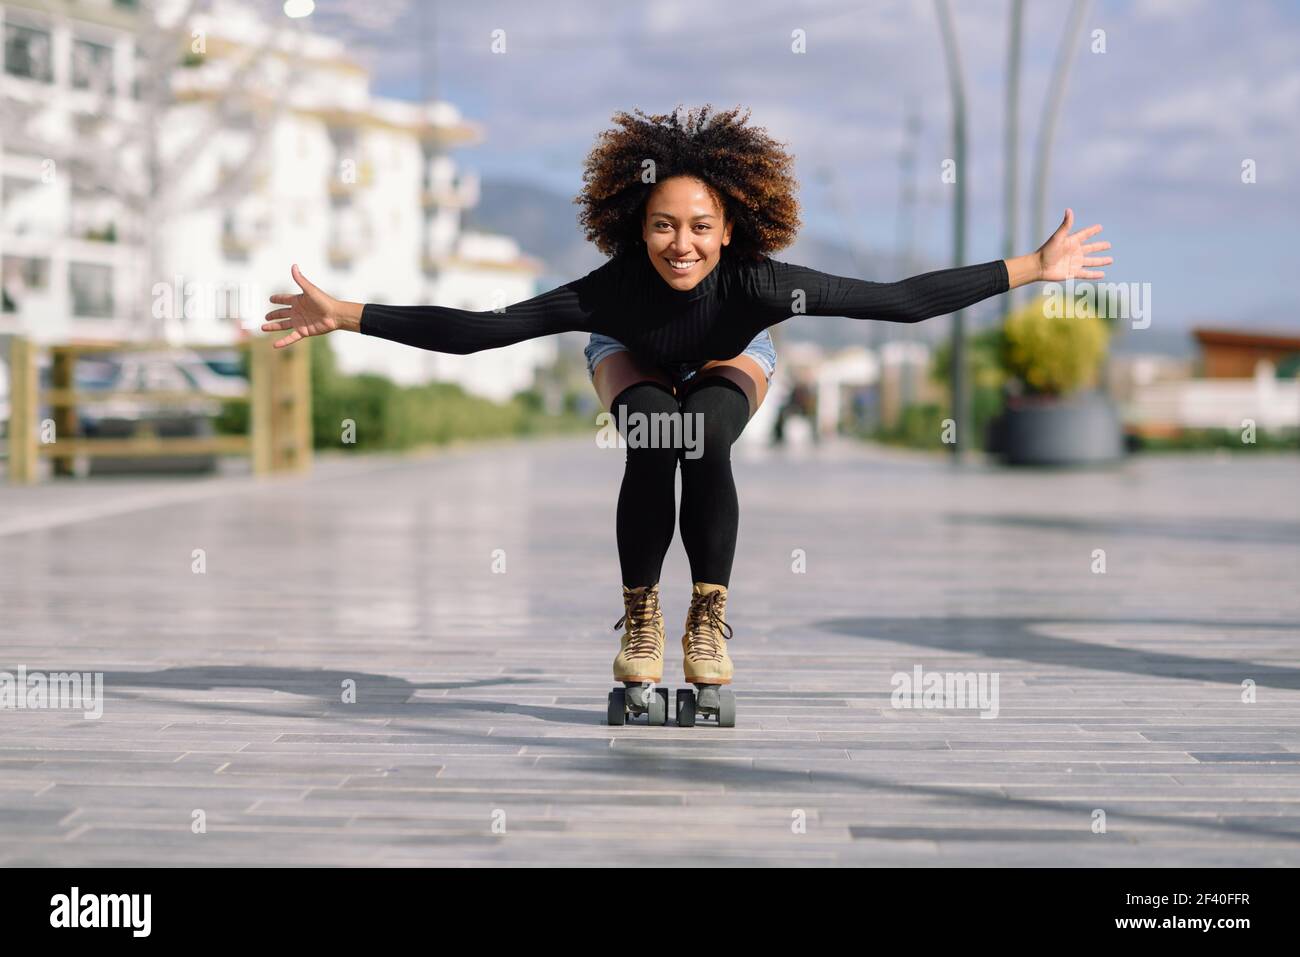 Jeune femme noire monter à cheval sur patins à l'extérieur sur la rue urbain à bras ouverts. Smiling girl avec coiffure afro à roues alignées sur un jour ensoleillé Banque D'Images